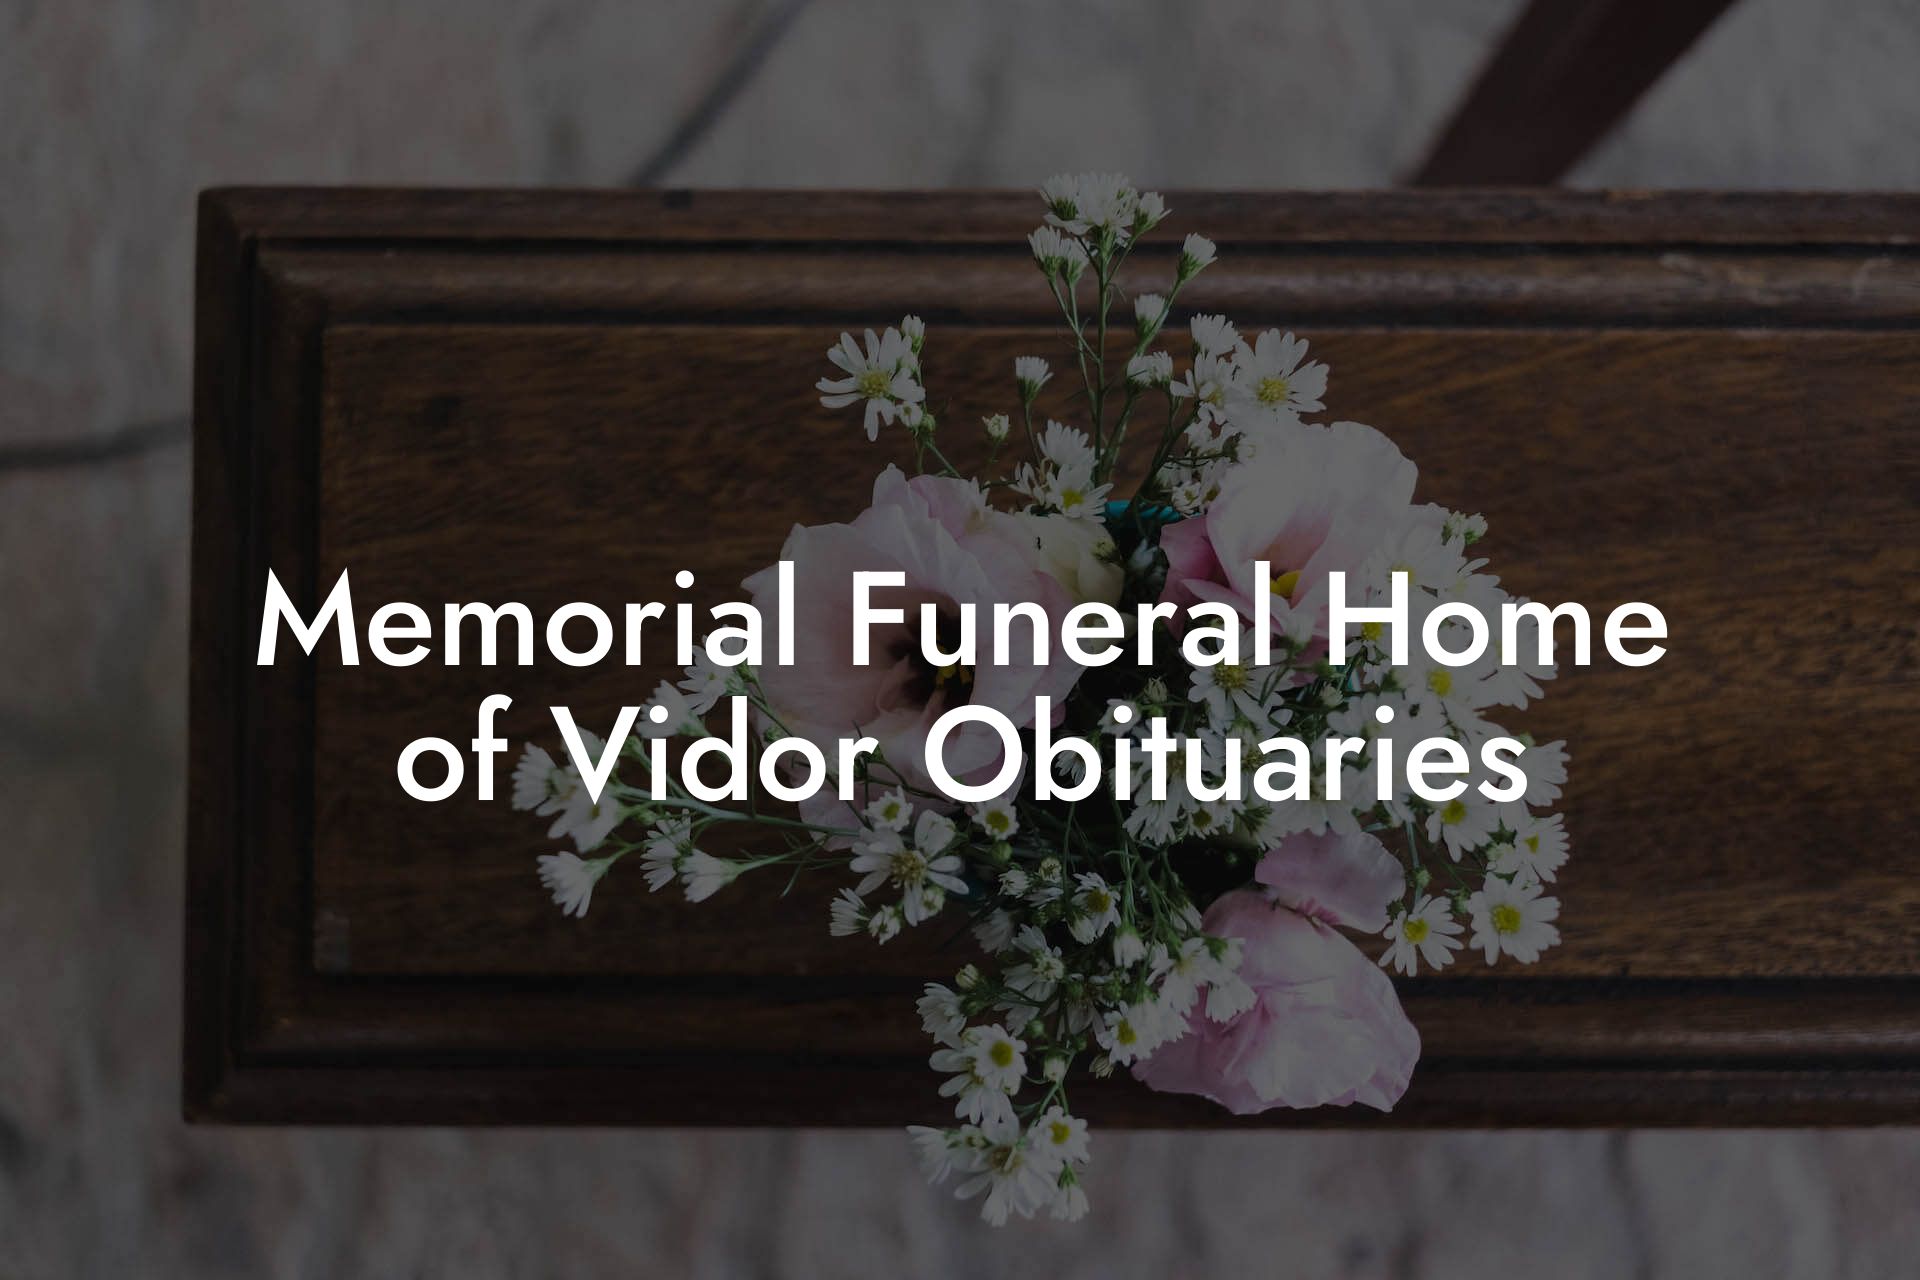 Memorial Funeral Home of Vidor Obituaries